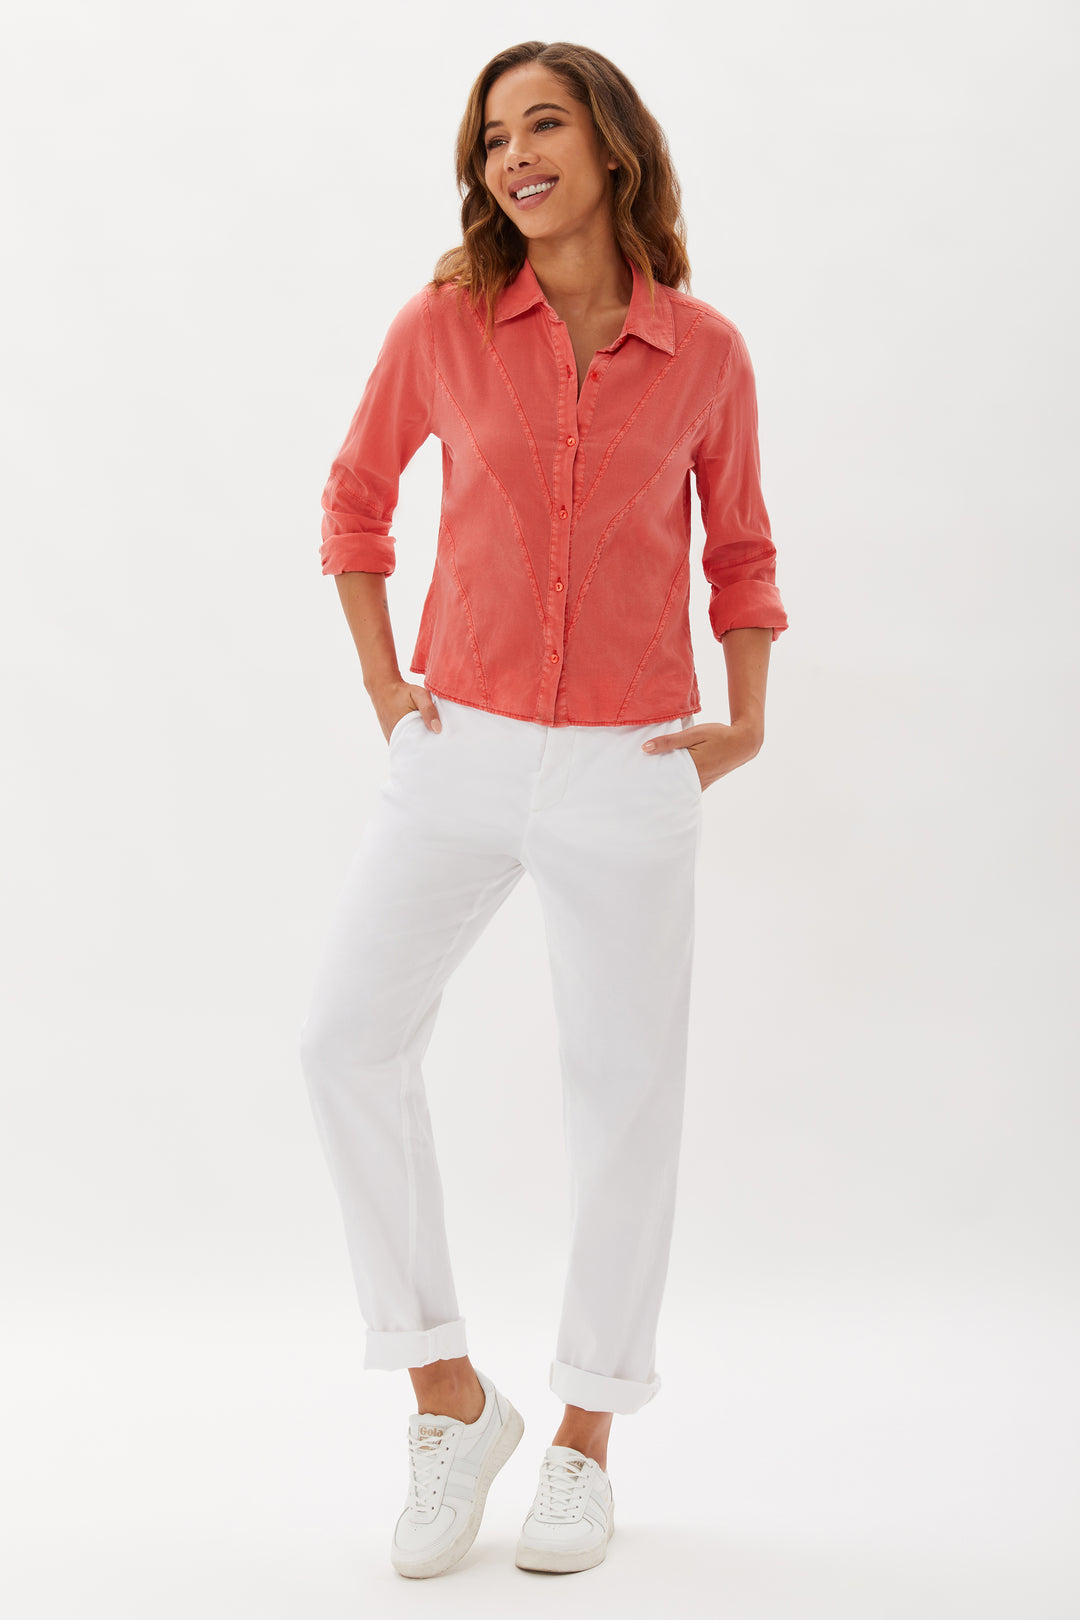 Hepburn Garment Dye With Seaming Detail Shirt - Nantucket Red